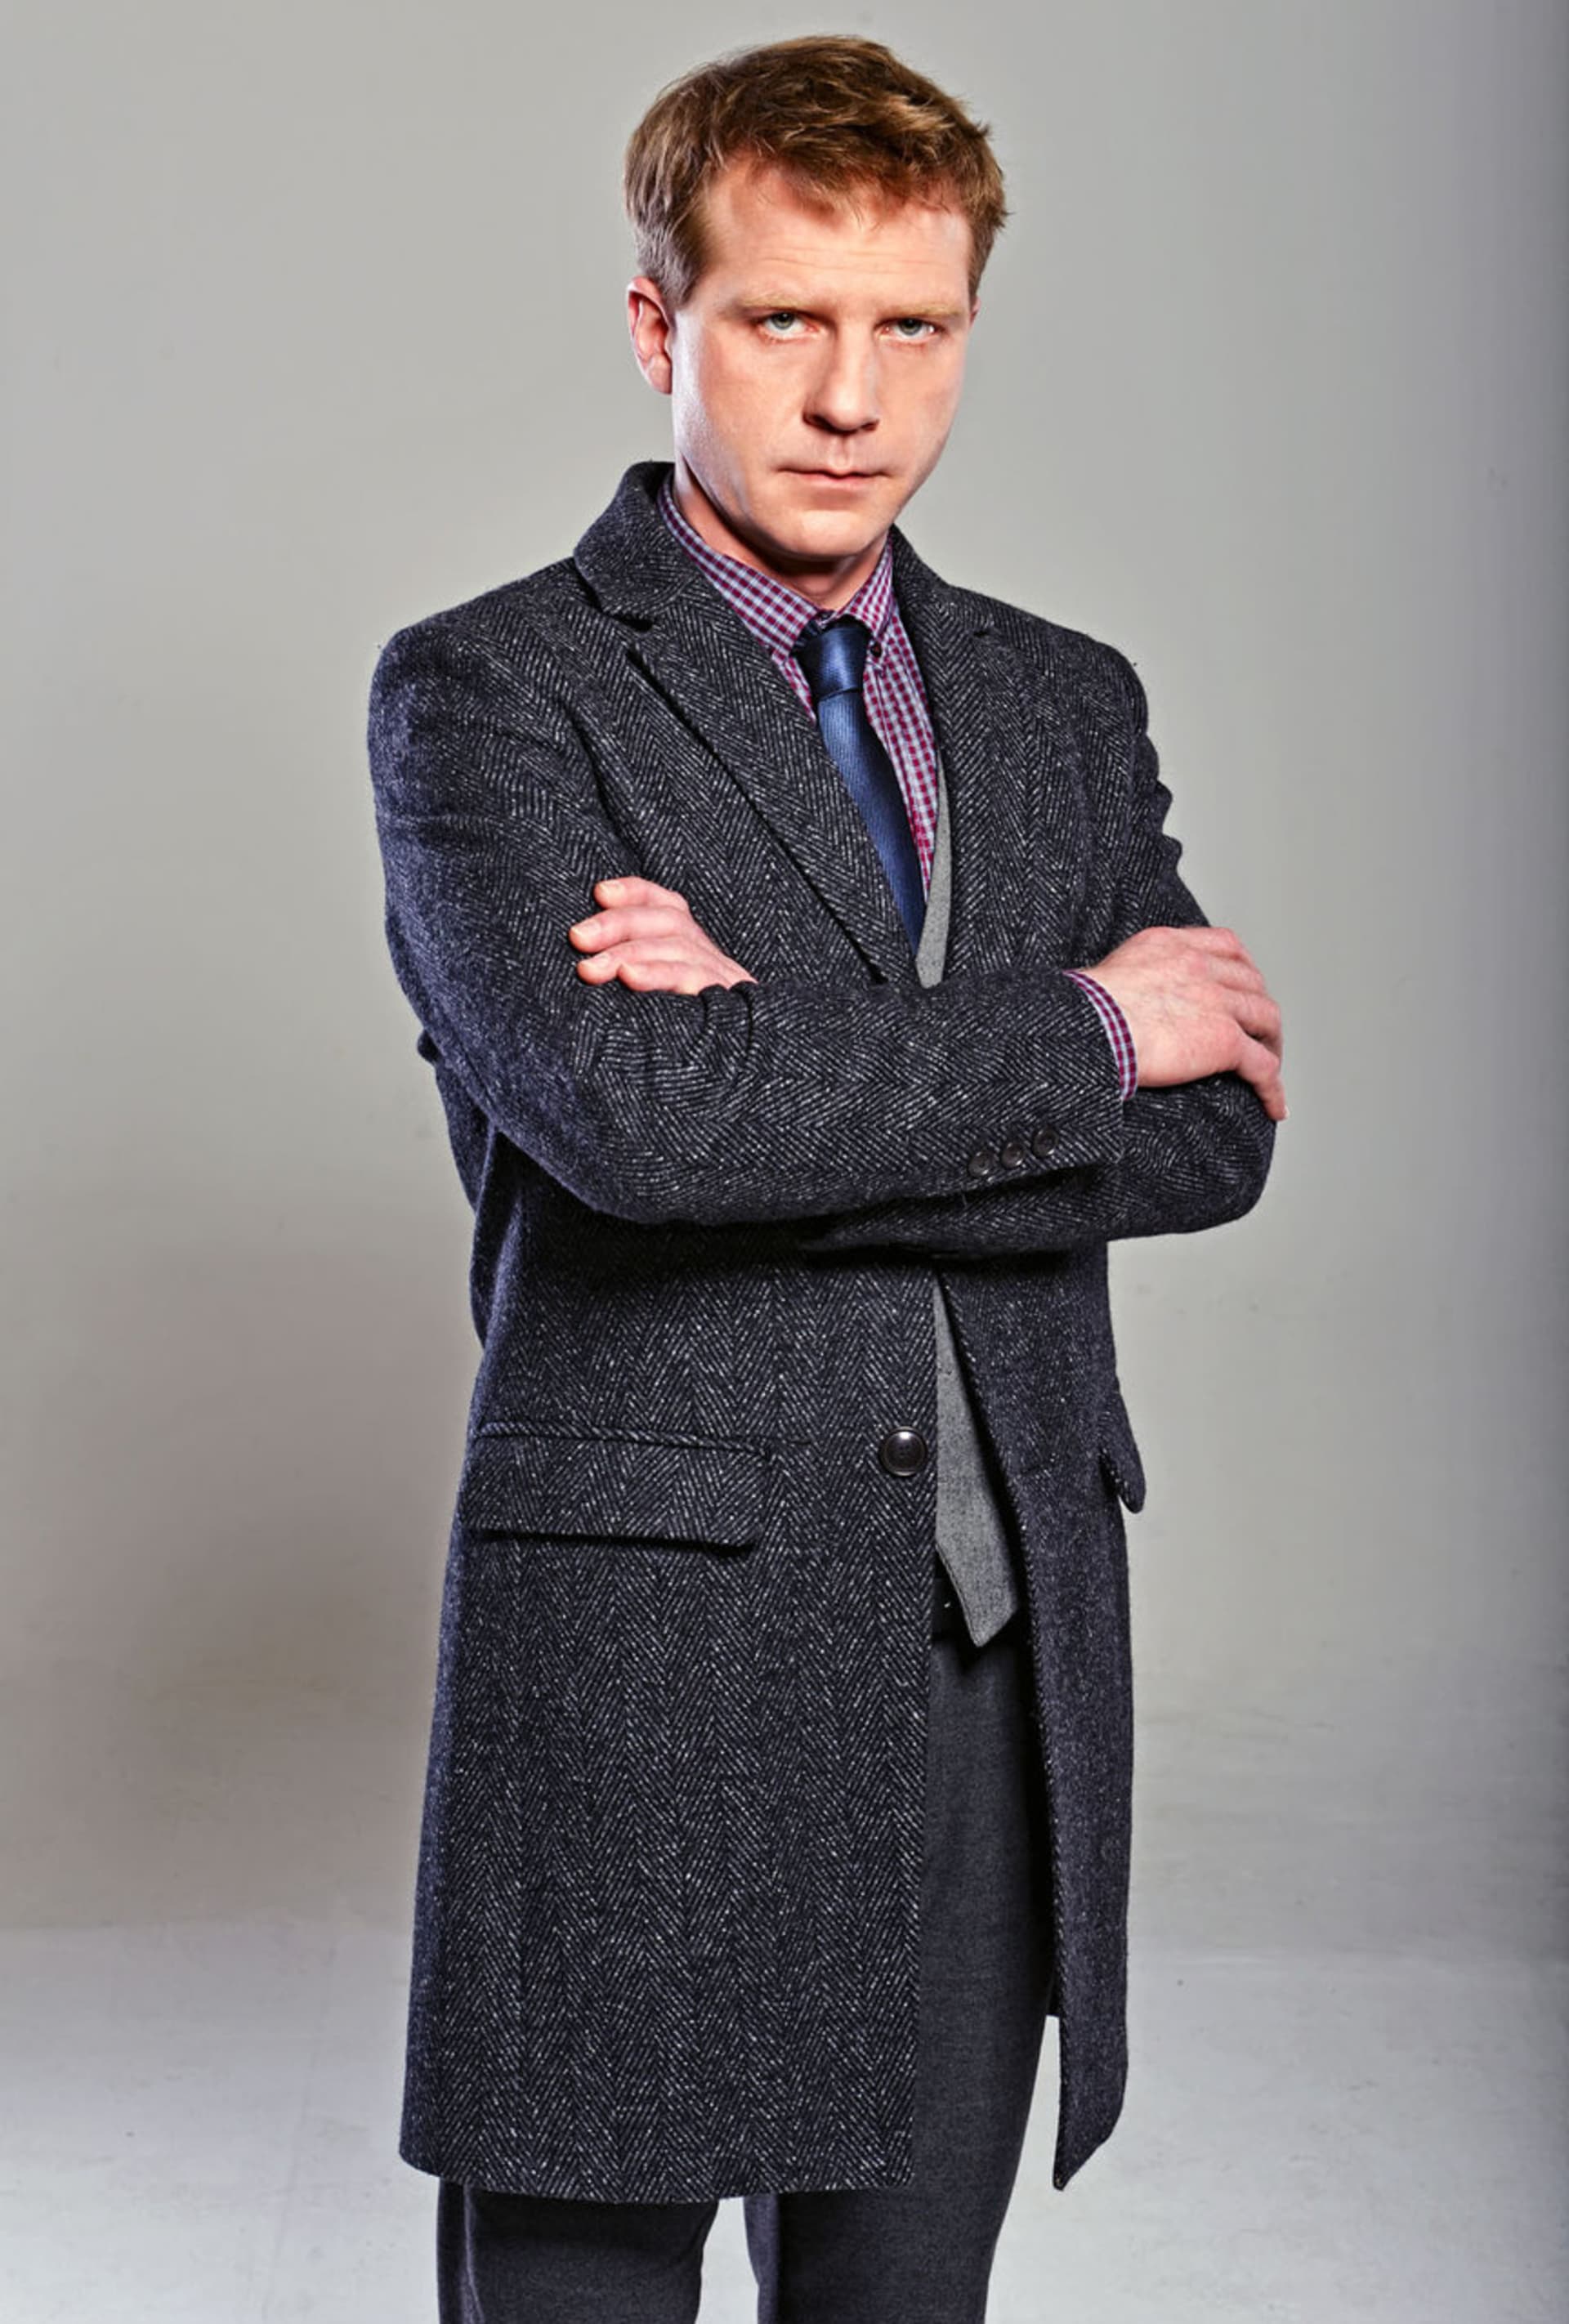 Herec Pavel Batěk se představil divákům také jako detektiv Pavel ze seriálu Mordparta.